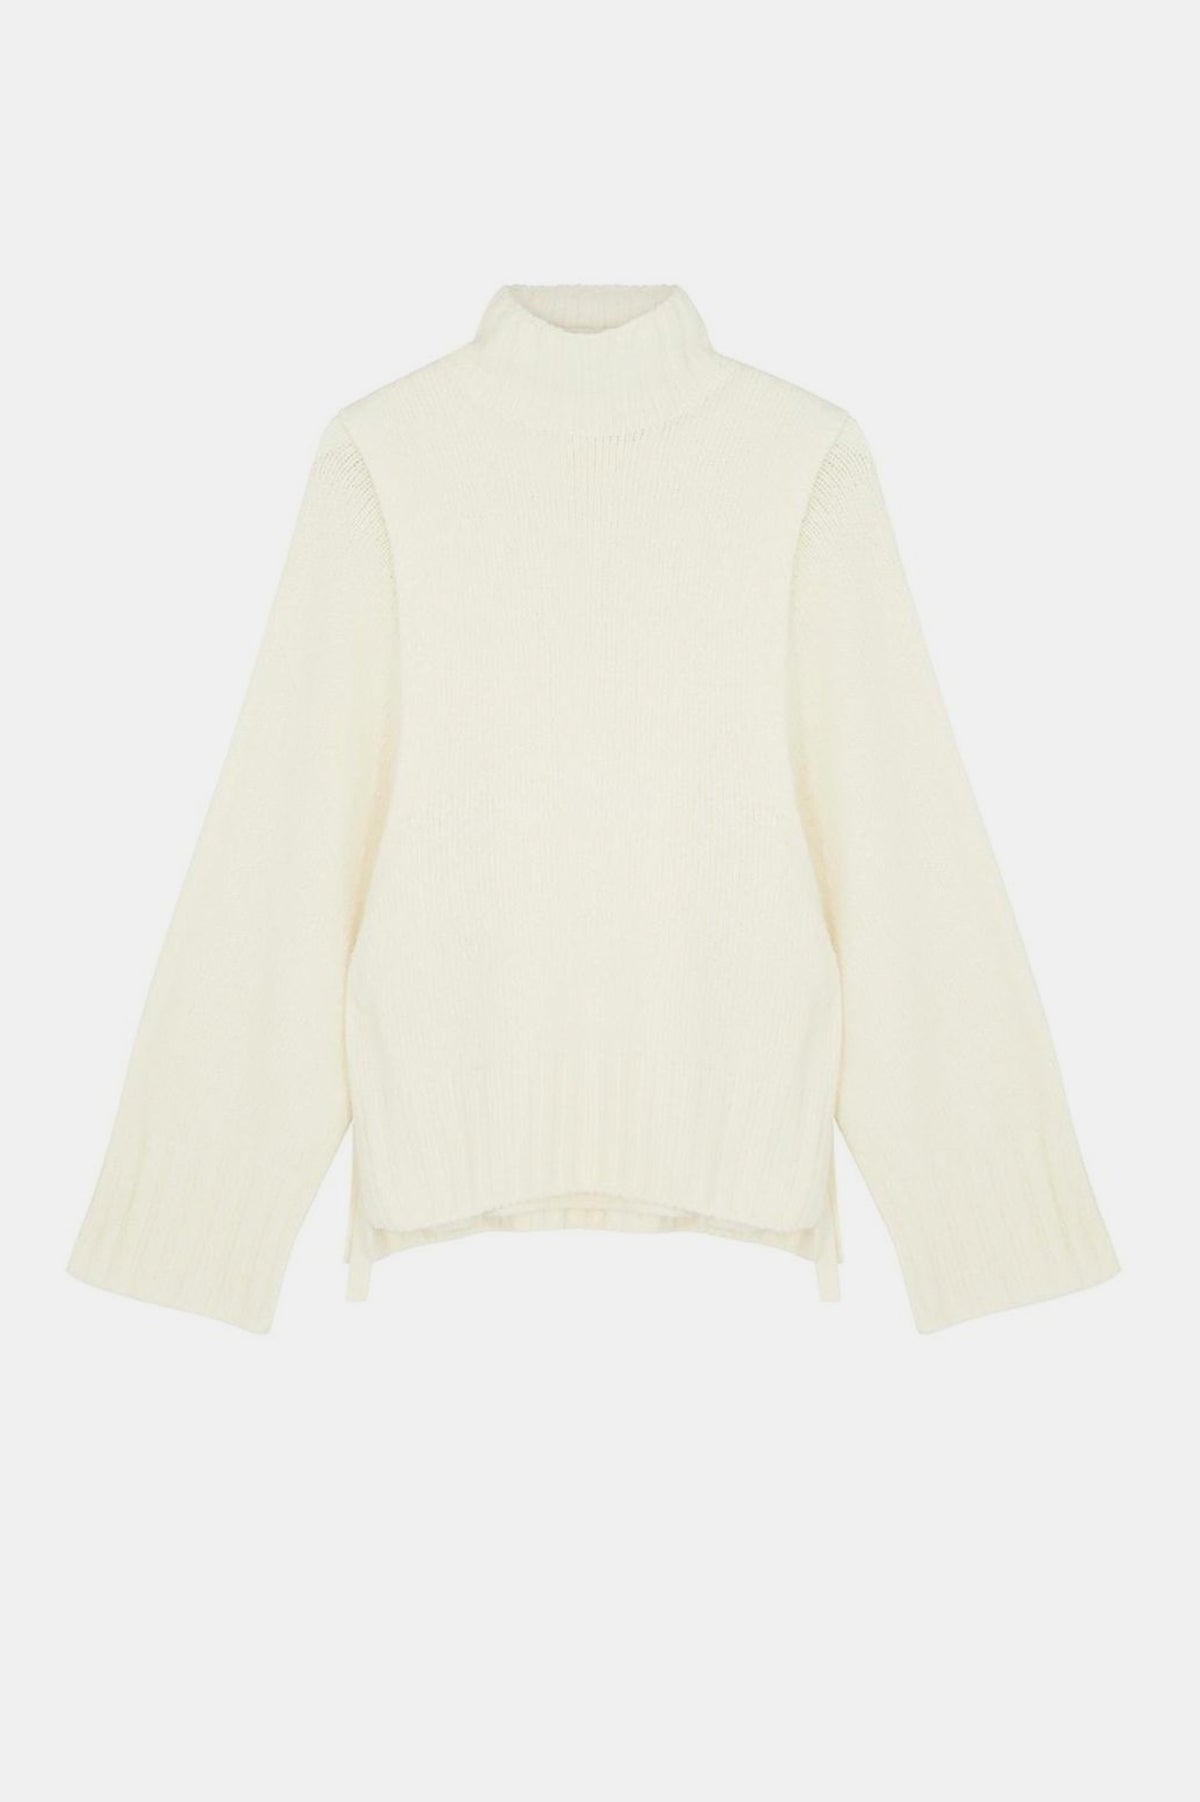 Escapee Sweater Vest Combo in Cream